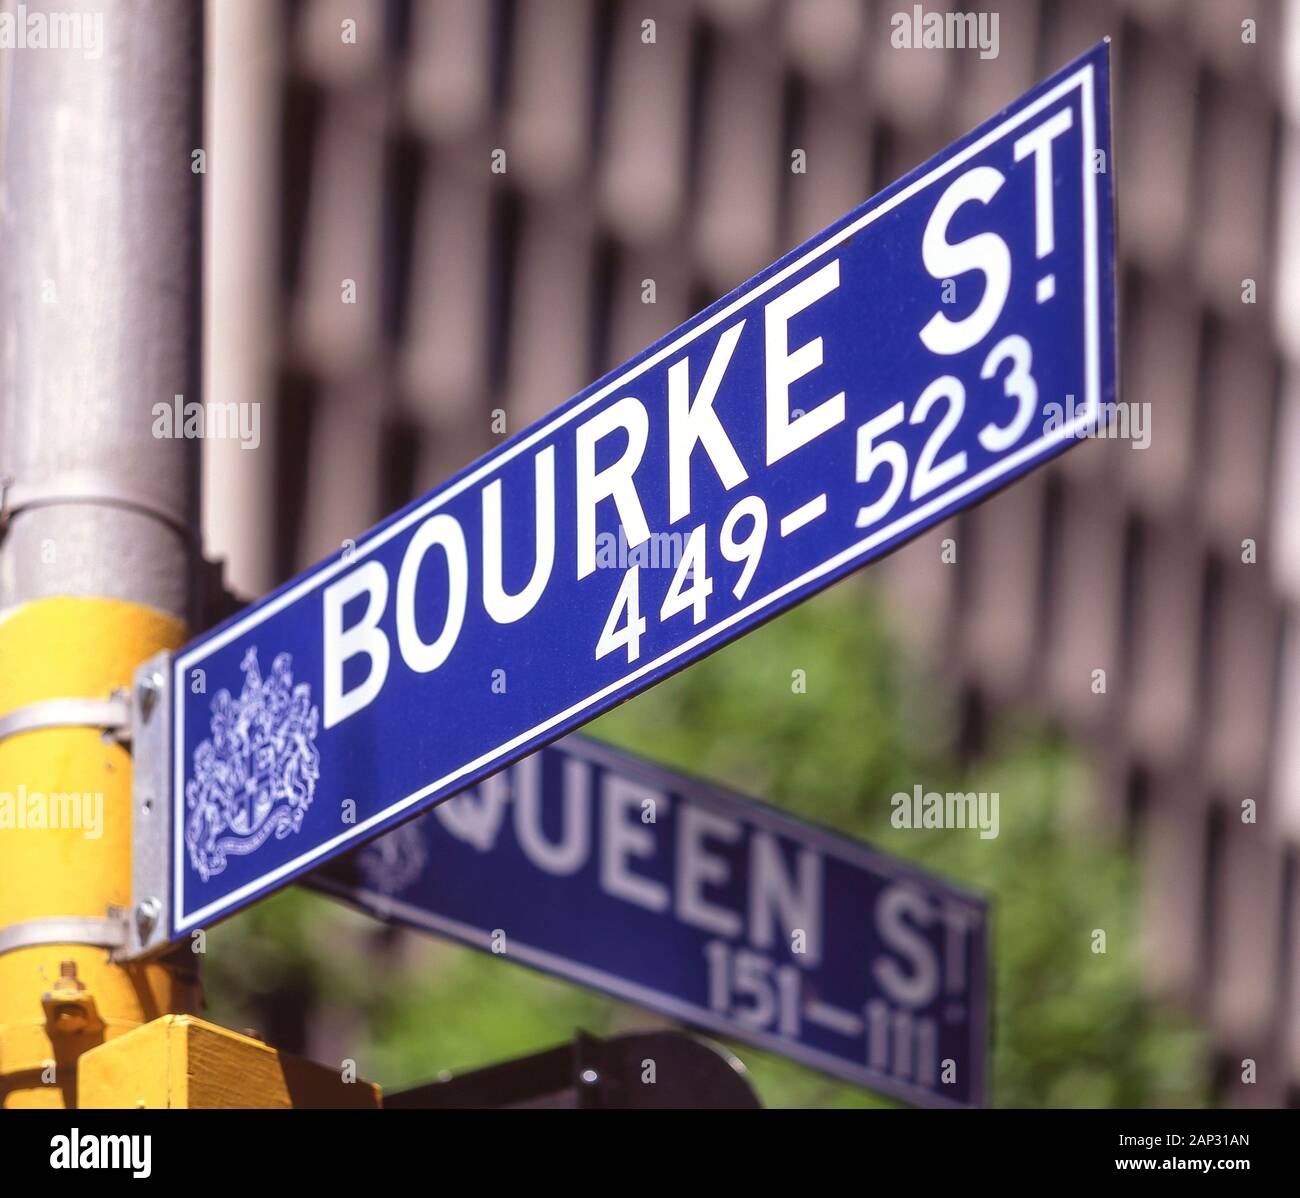 Bourke Street sign dans le centre-ville de Melbourne, Victoria, Australie Banque D'Images